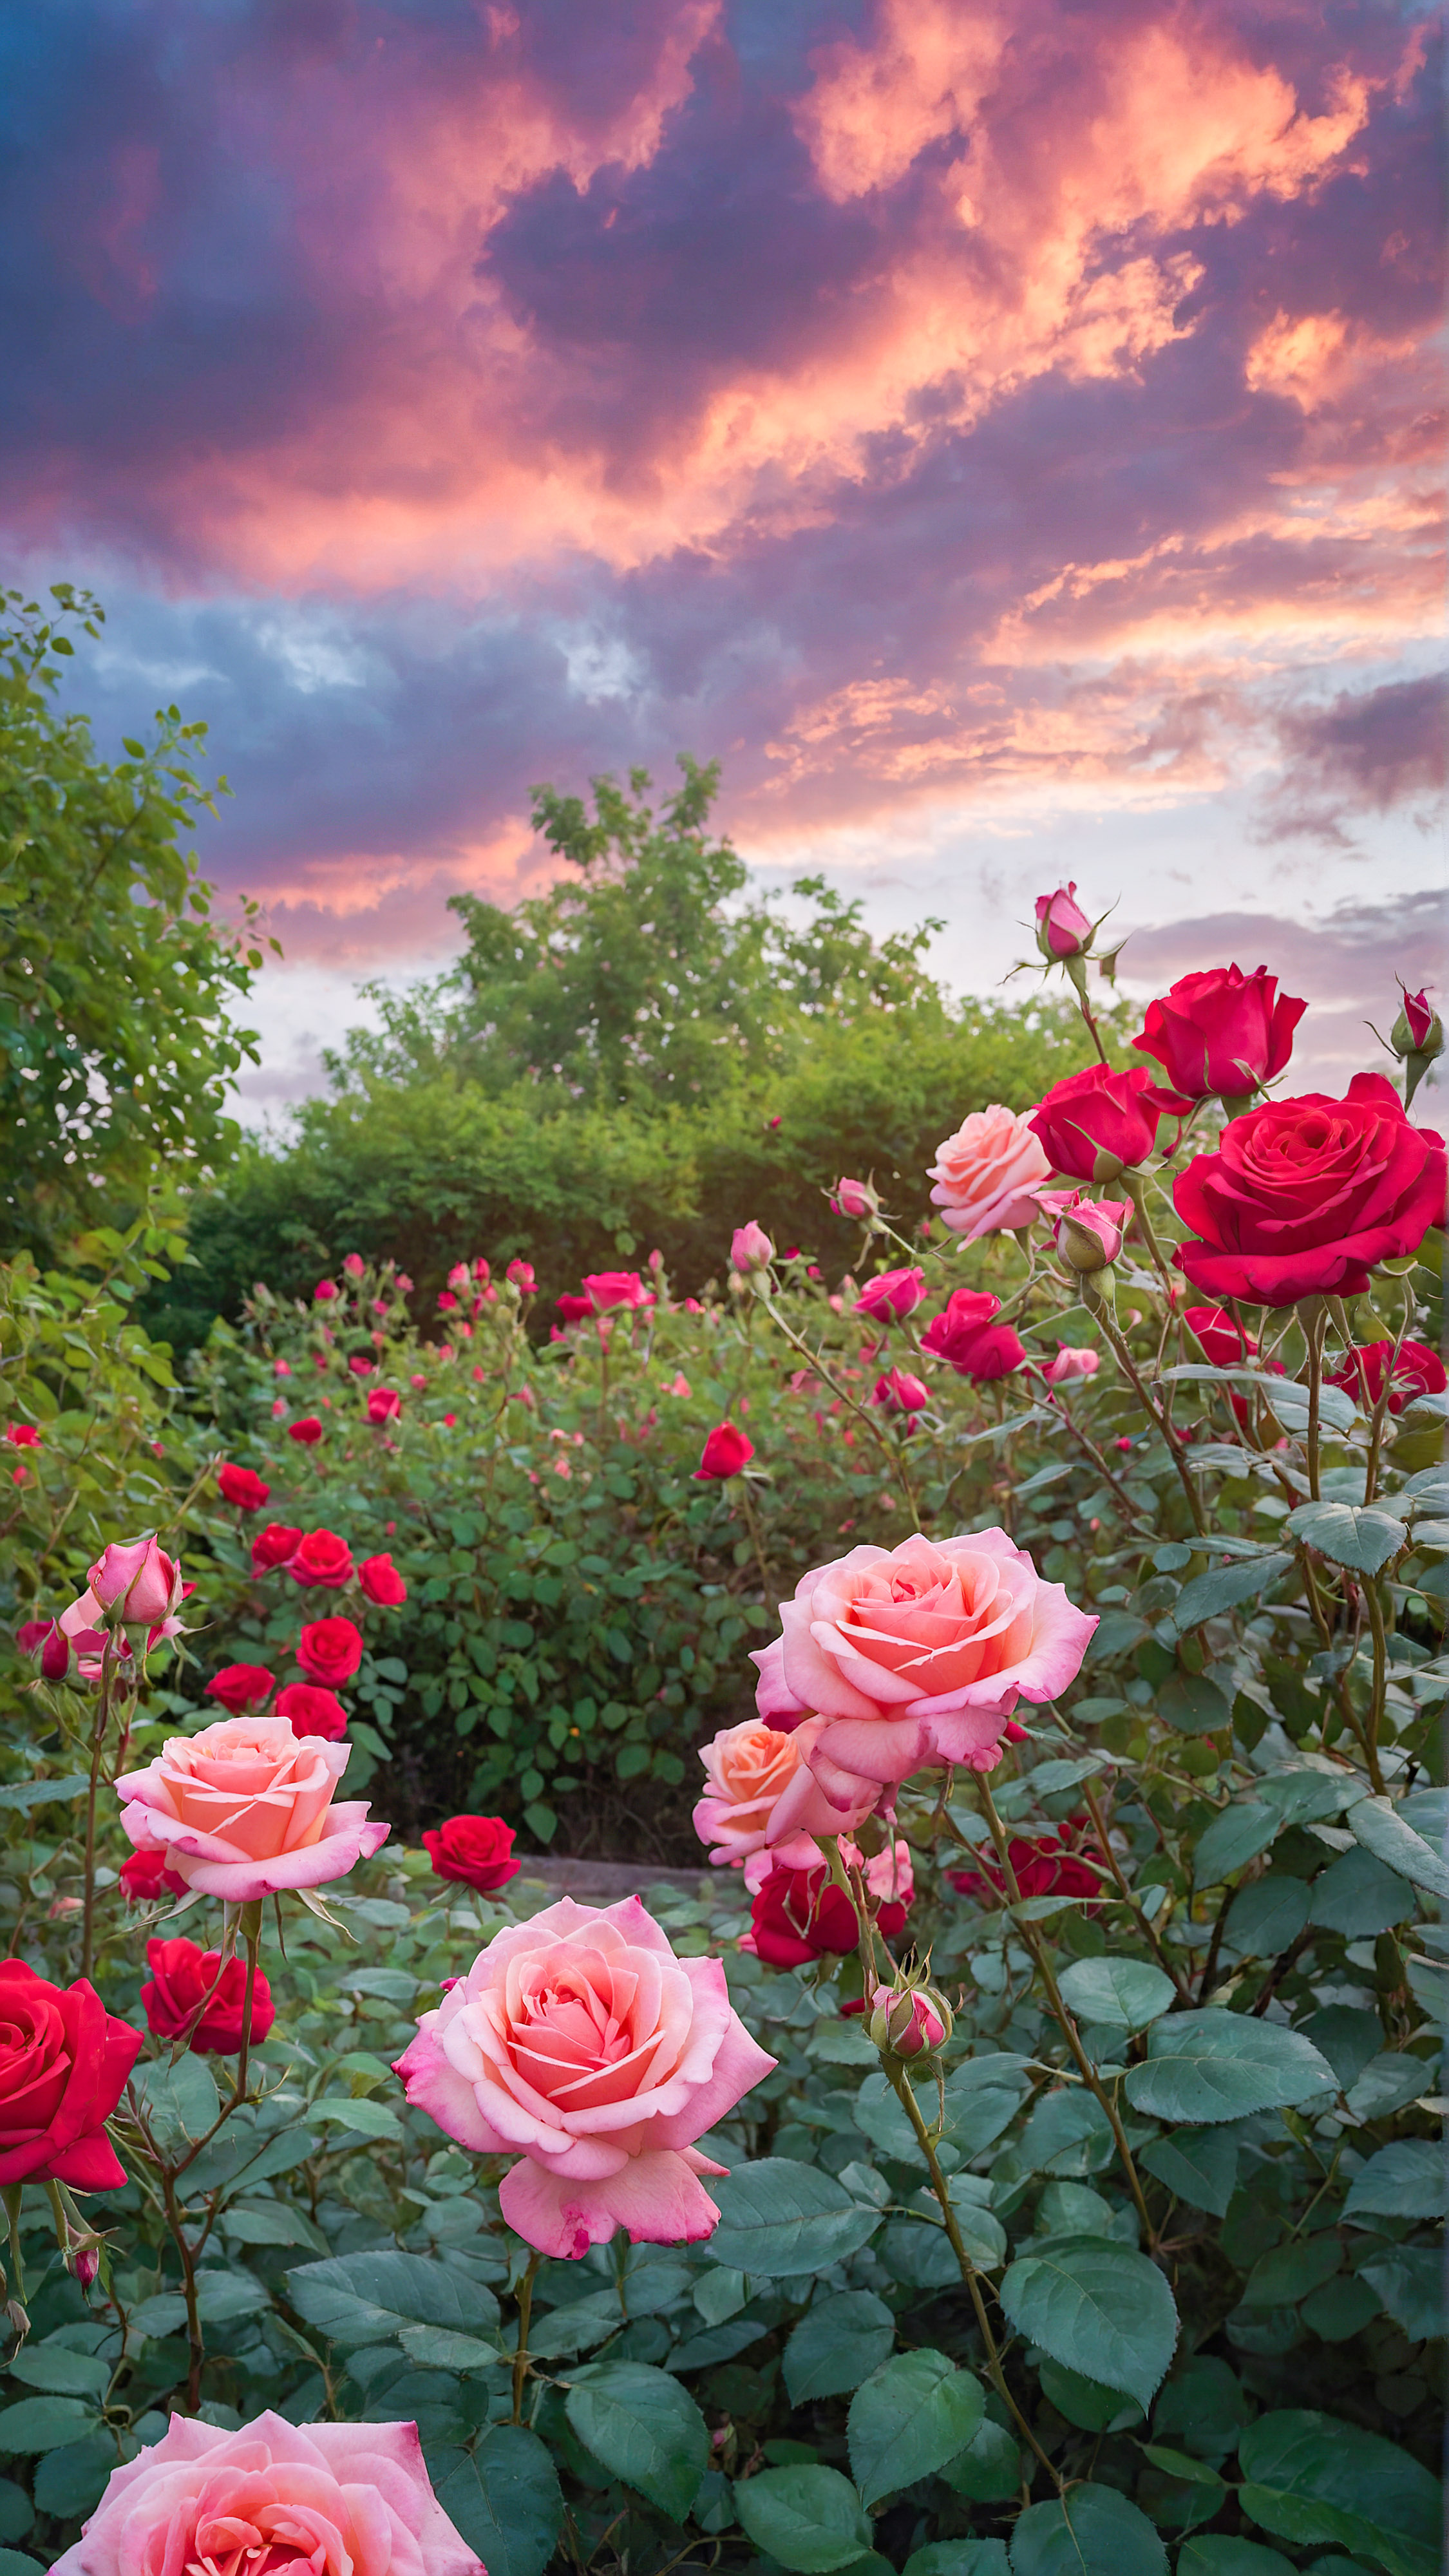 Transformez l'apparence de votre appareil avec un fond d'écran mignon HD pour iPhone, présentant un jardin vibrant rempli de roses roses et rouges en fleurs sous un ciel lumineux et nuageux.